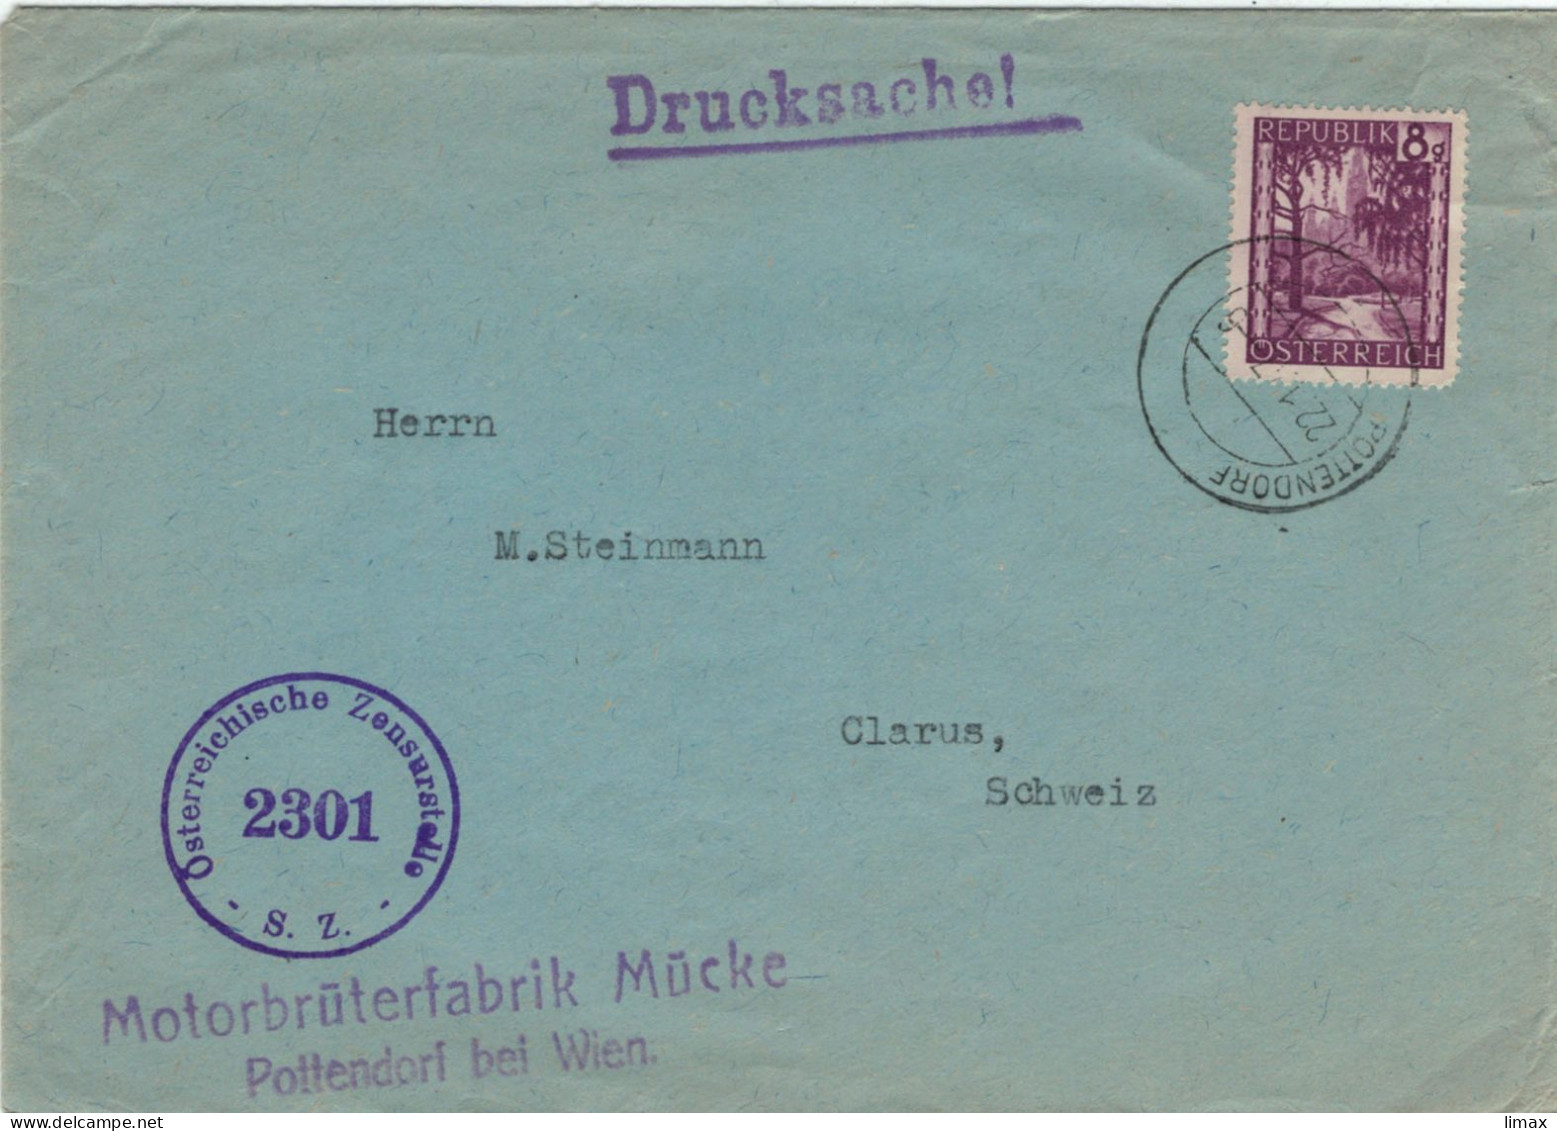 Motorbrüterfabrik Mücke Pottendorf Bei Wien 1947 Zensur 2301 > Glarus - Geflügelzucht Tierschutz Tierleid Skandale - Lettres & Documents